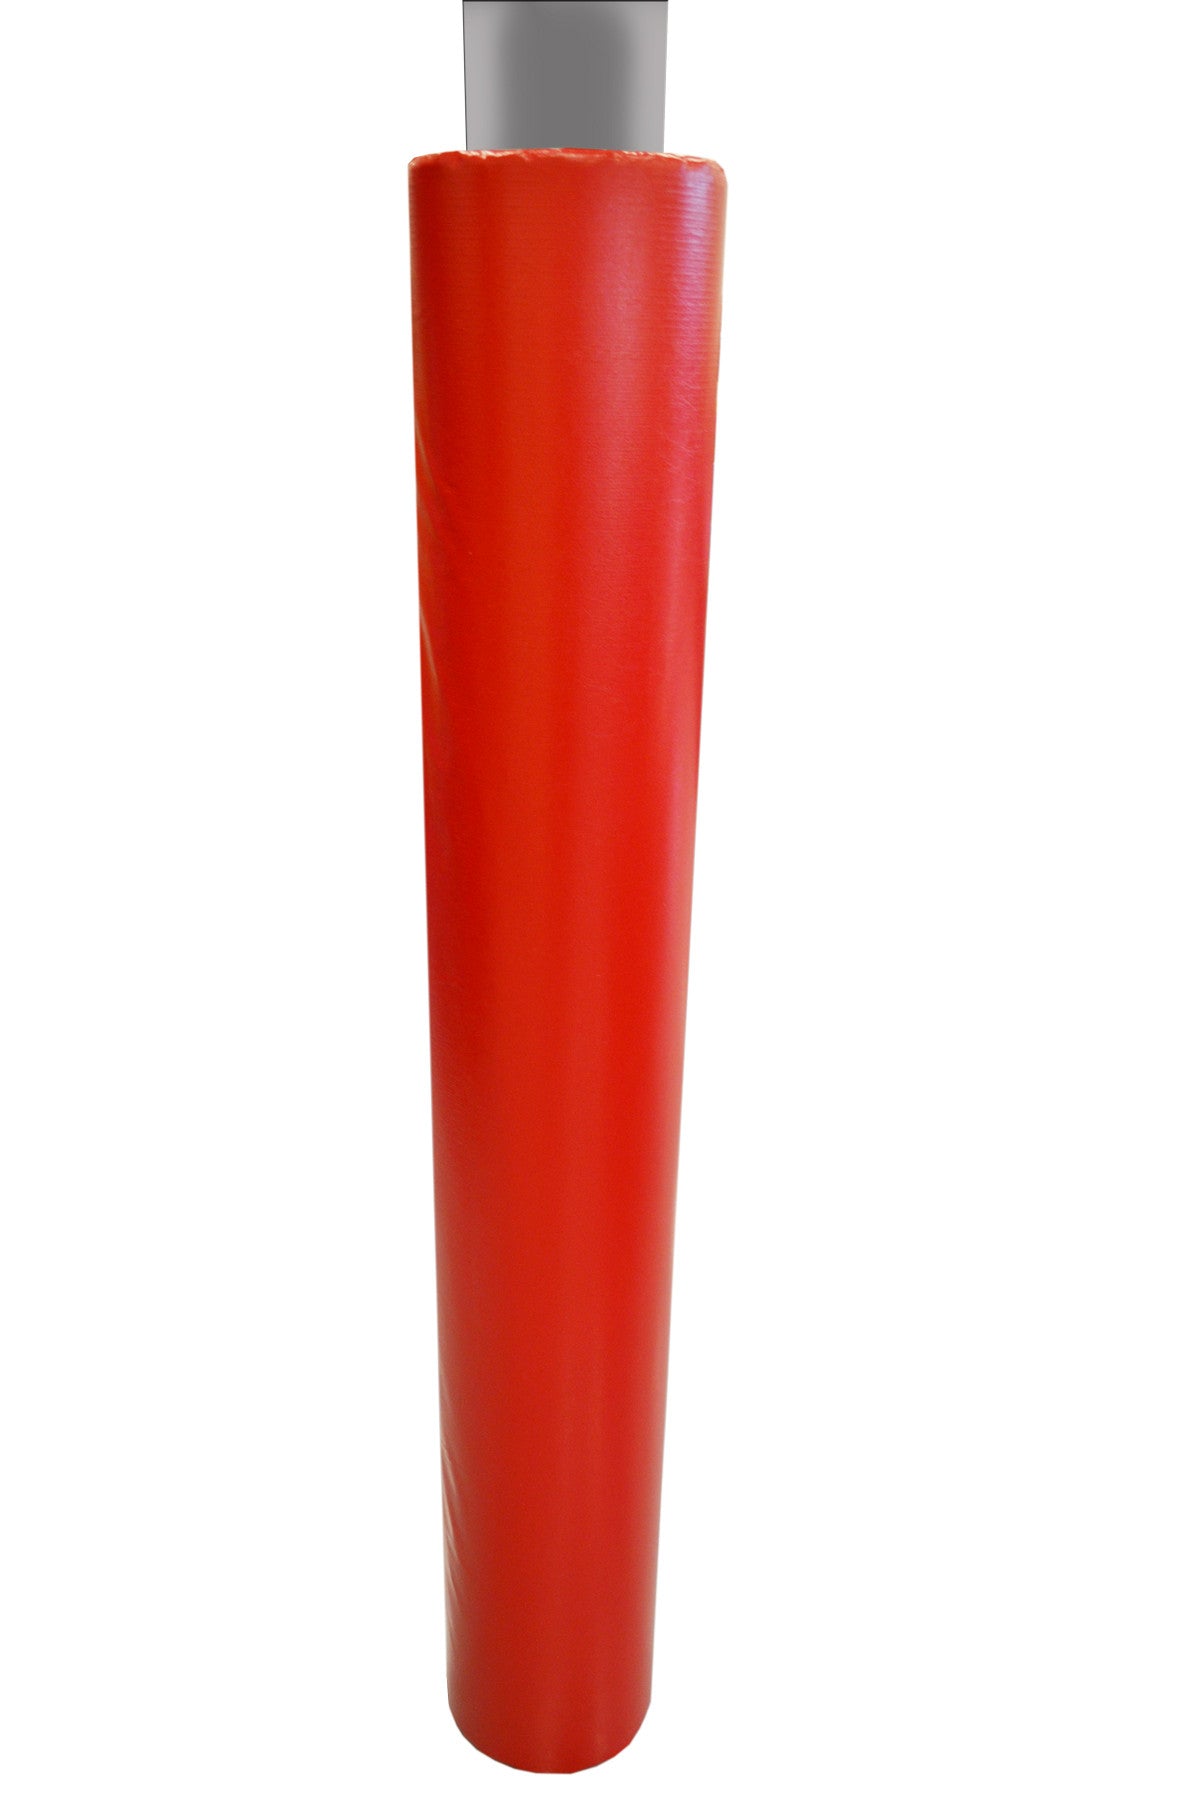 4' Tall Pole Pad, 4" Diameter